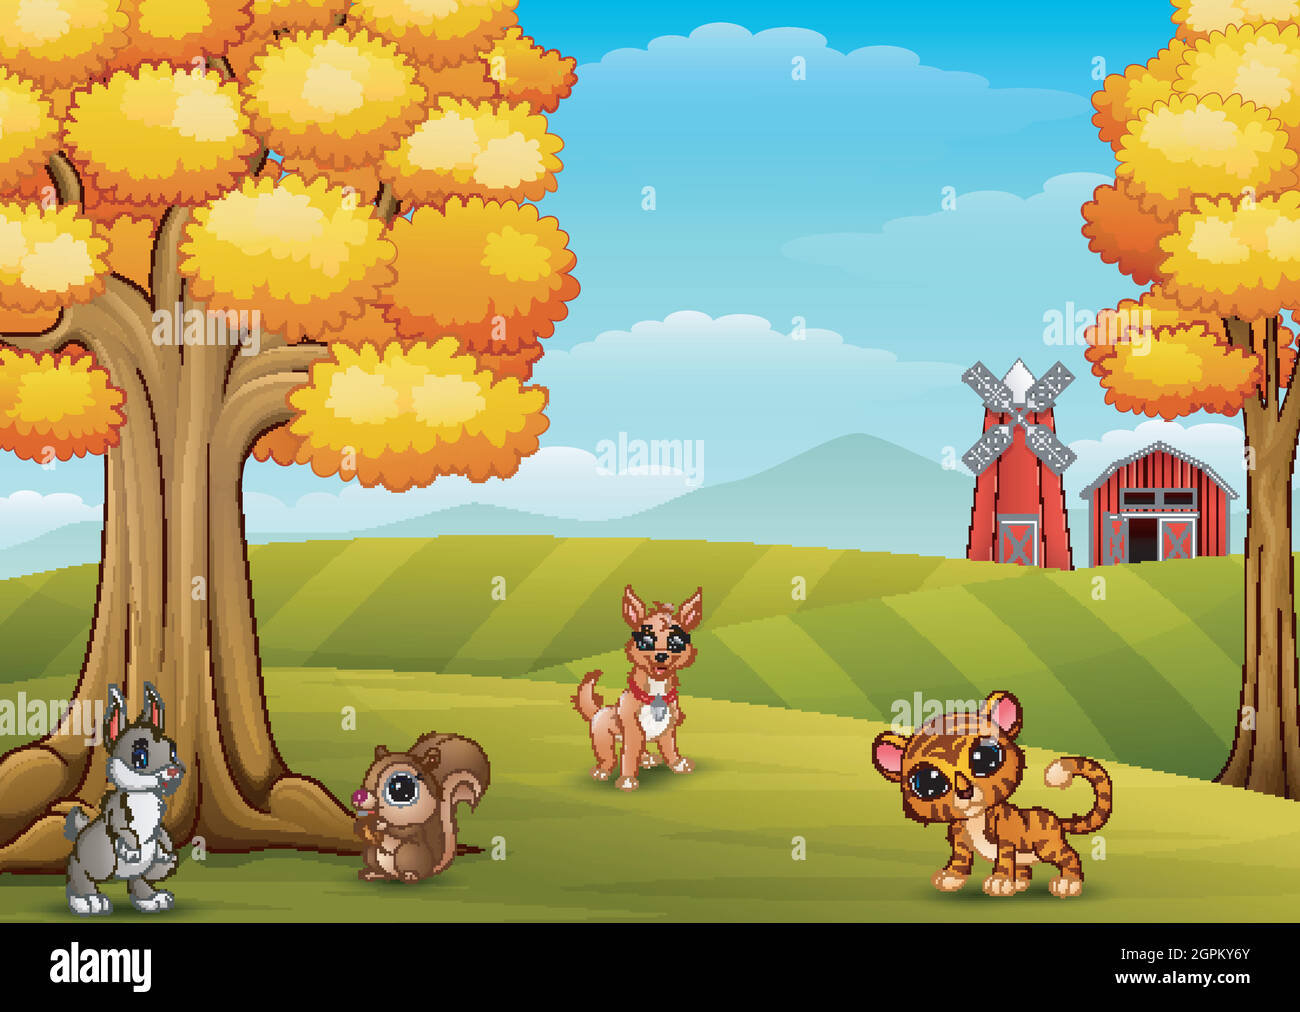 Animali cartoni animati sullo sfondo della fattoria Immagine e Vettoriale -  Alamy